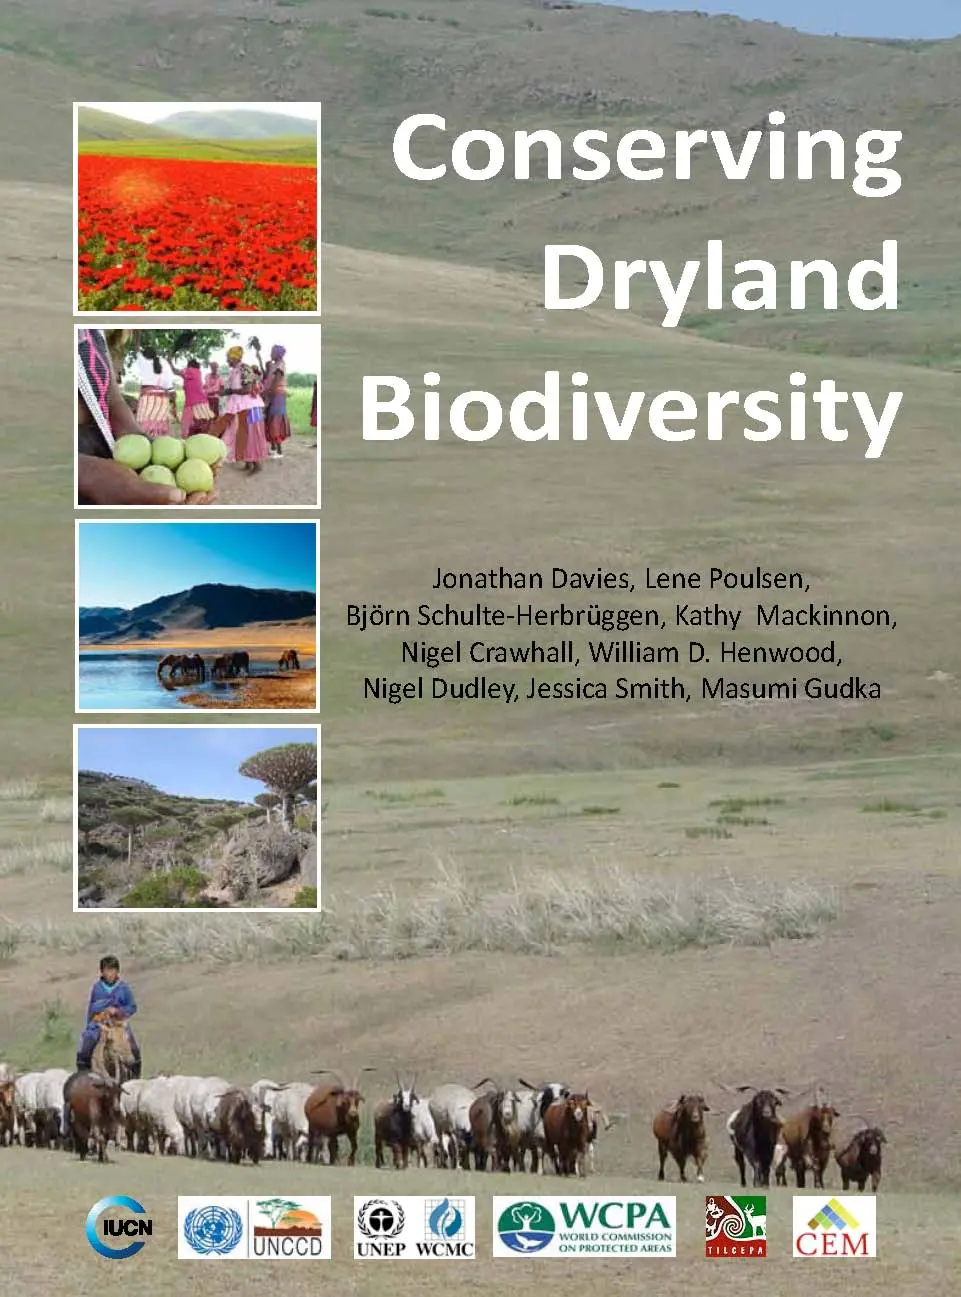 Conserving Drylands